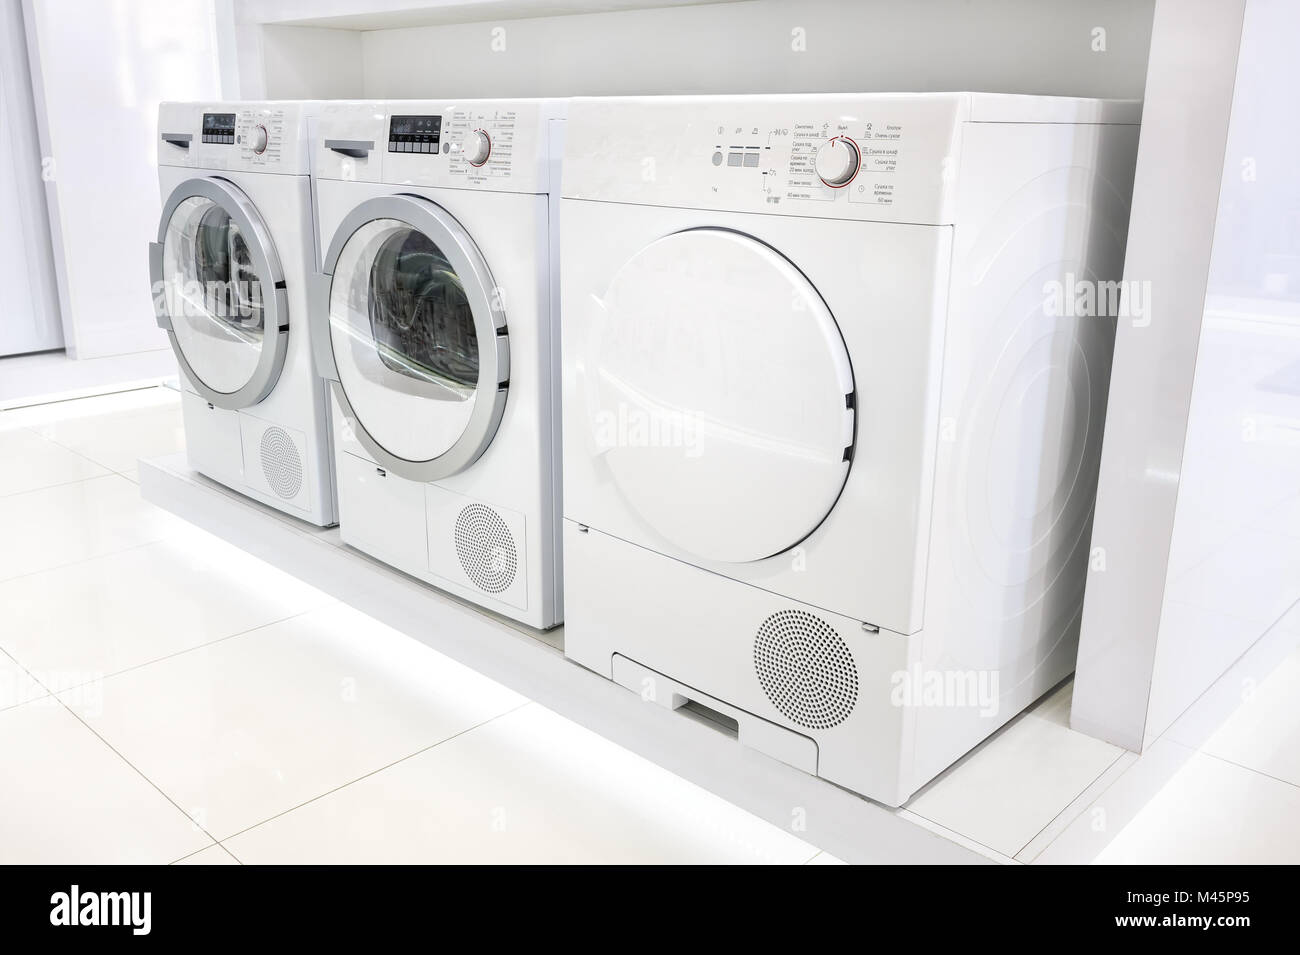 Wasch-Maschinen im Gerät speichern Stockfoto